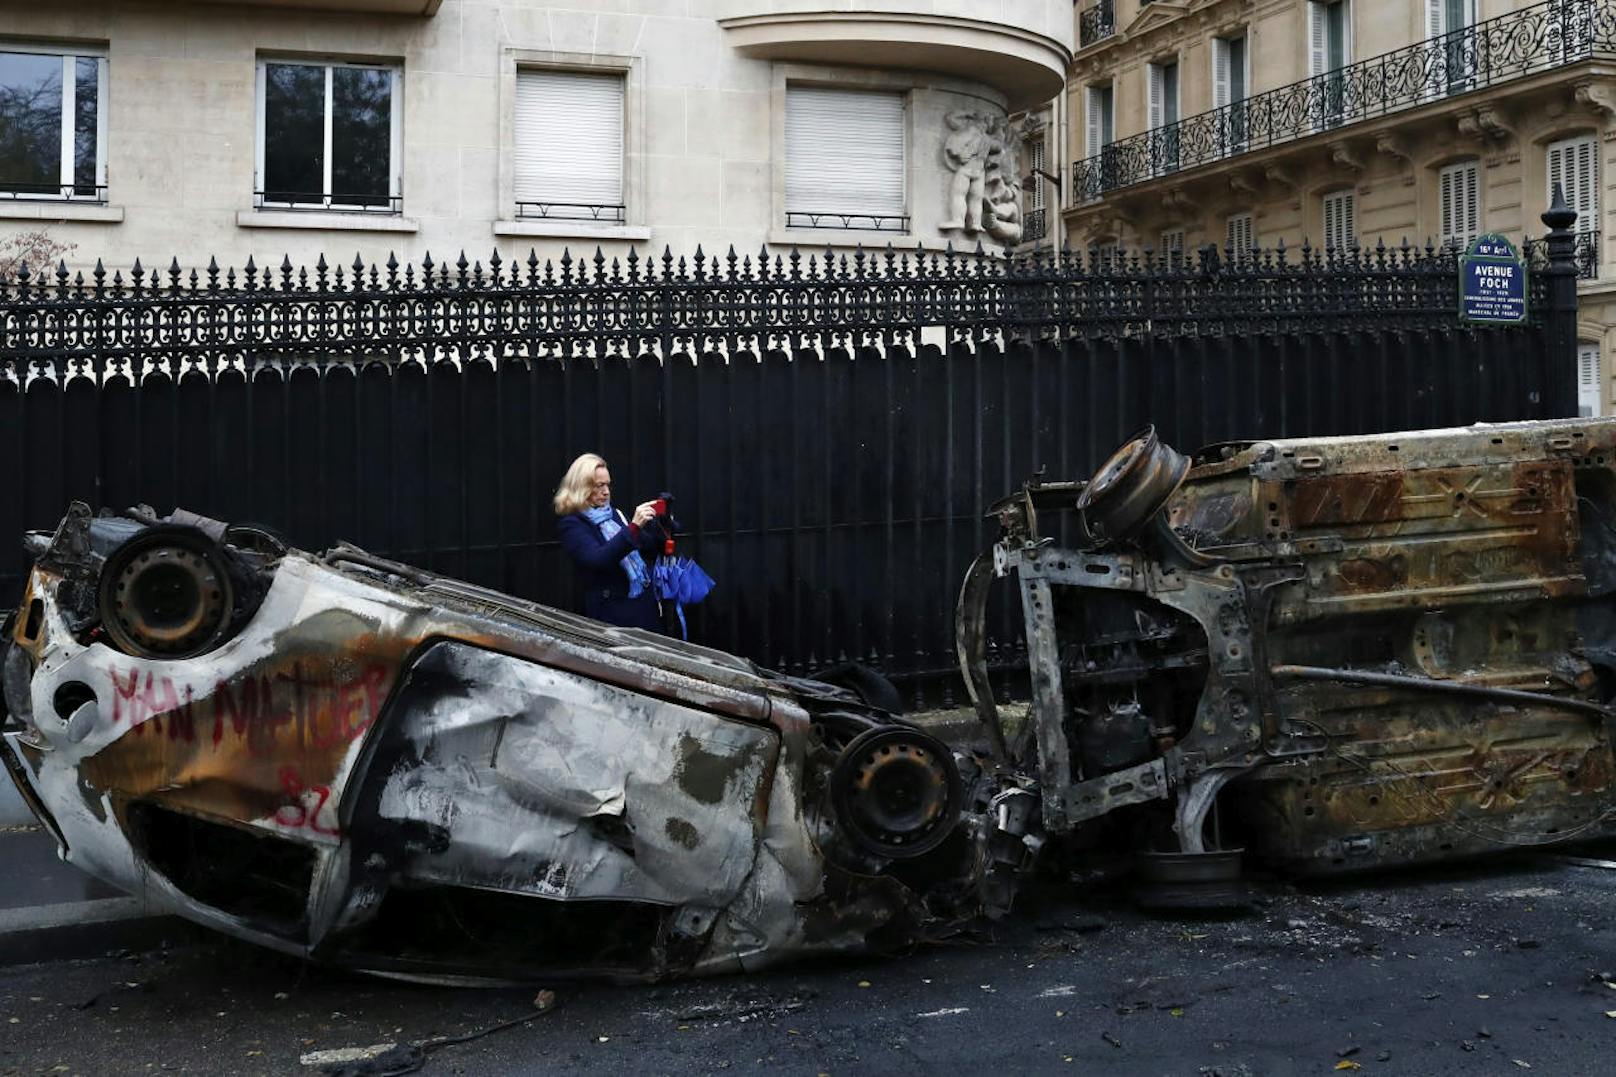 Beim erneuten Protestaufmarsch der regieurngskritischen "Gelbwesten" (Gilets jaunes) in Paris kam es zu Ausschreitungen. 133 Menschen wurden verletzt, rund 400 Personen wurden festgenommen. 